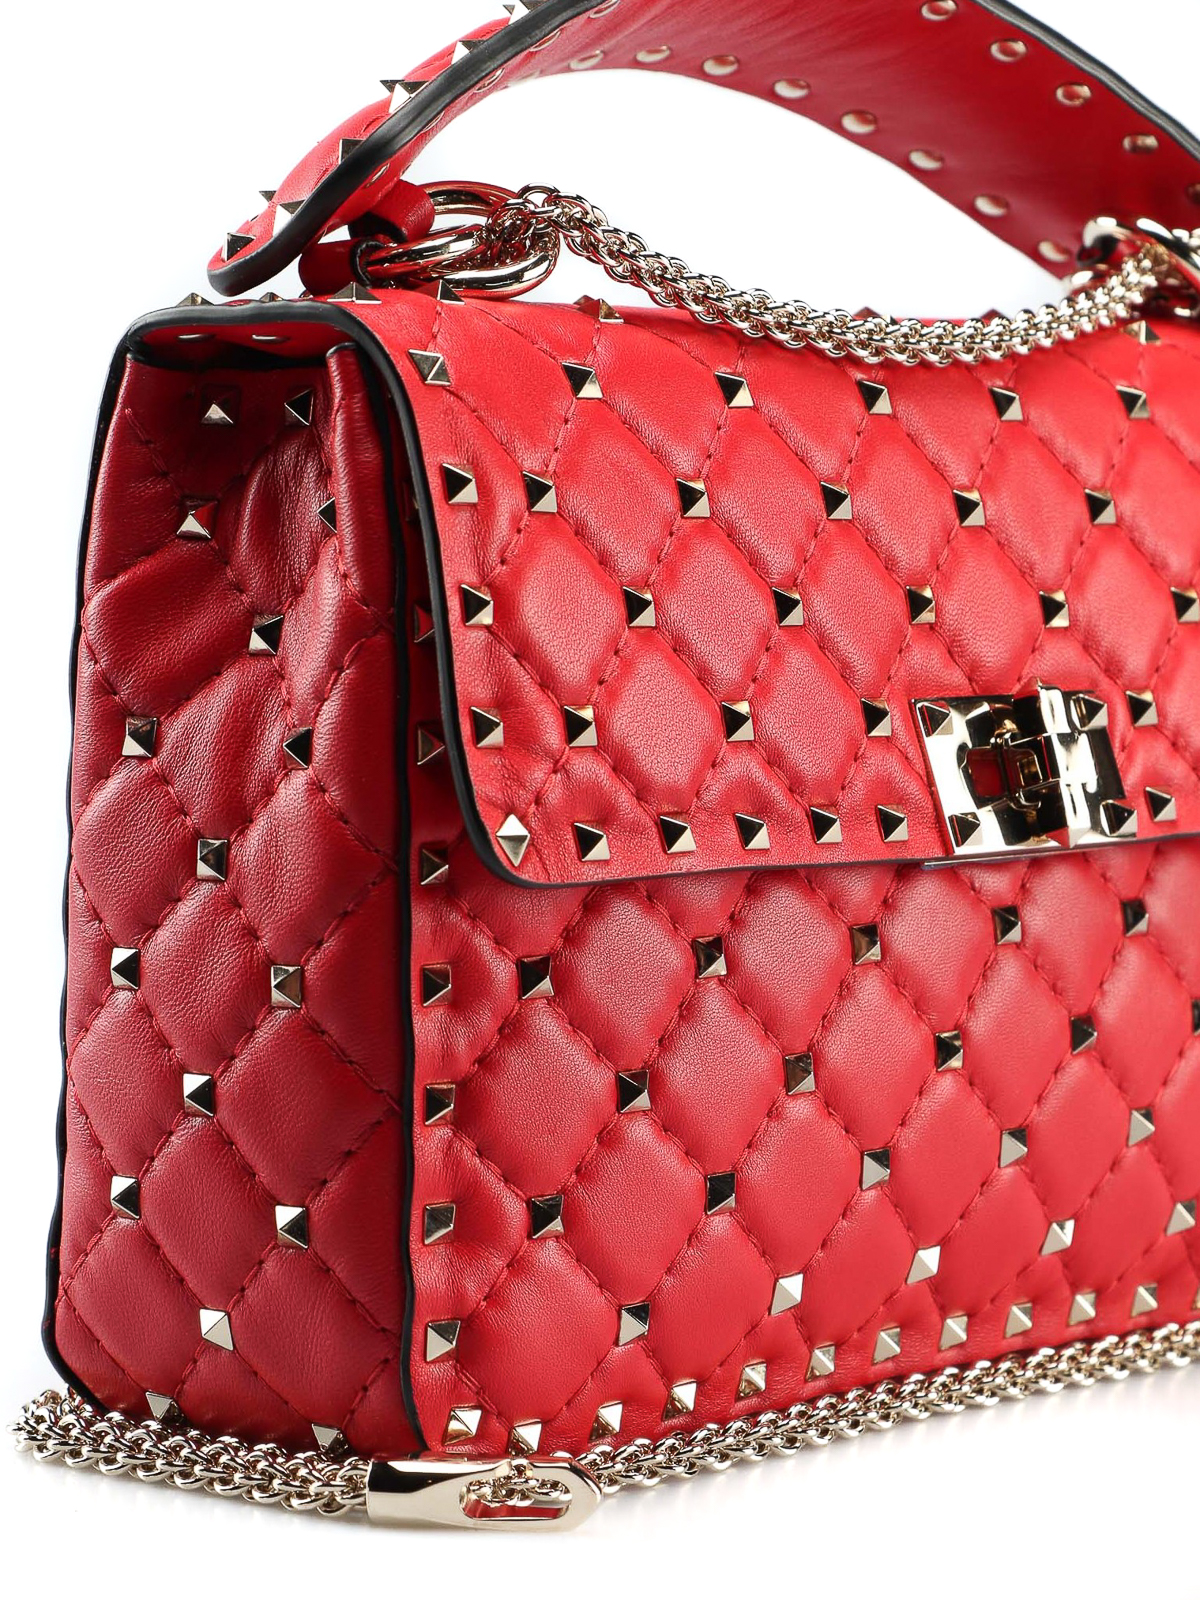 Shoulder bags Valentino Garavani - Rockstud Spike M red bag